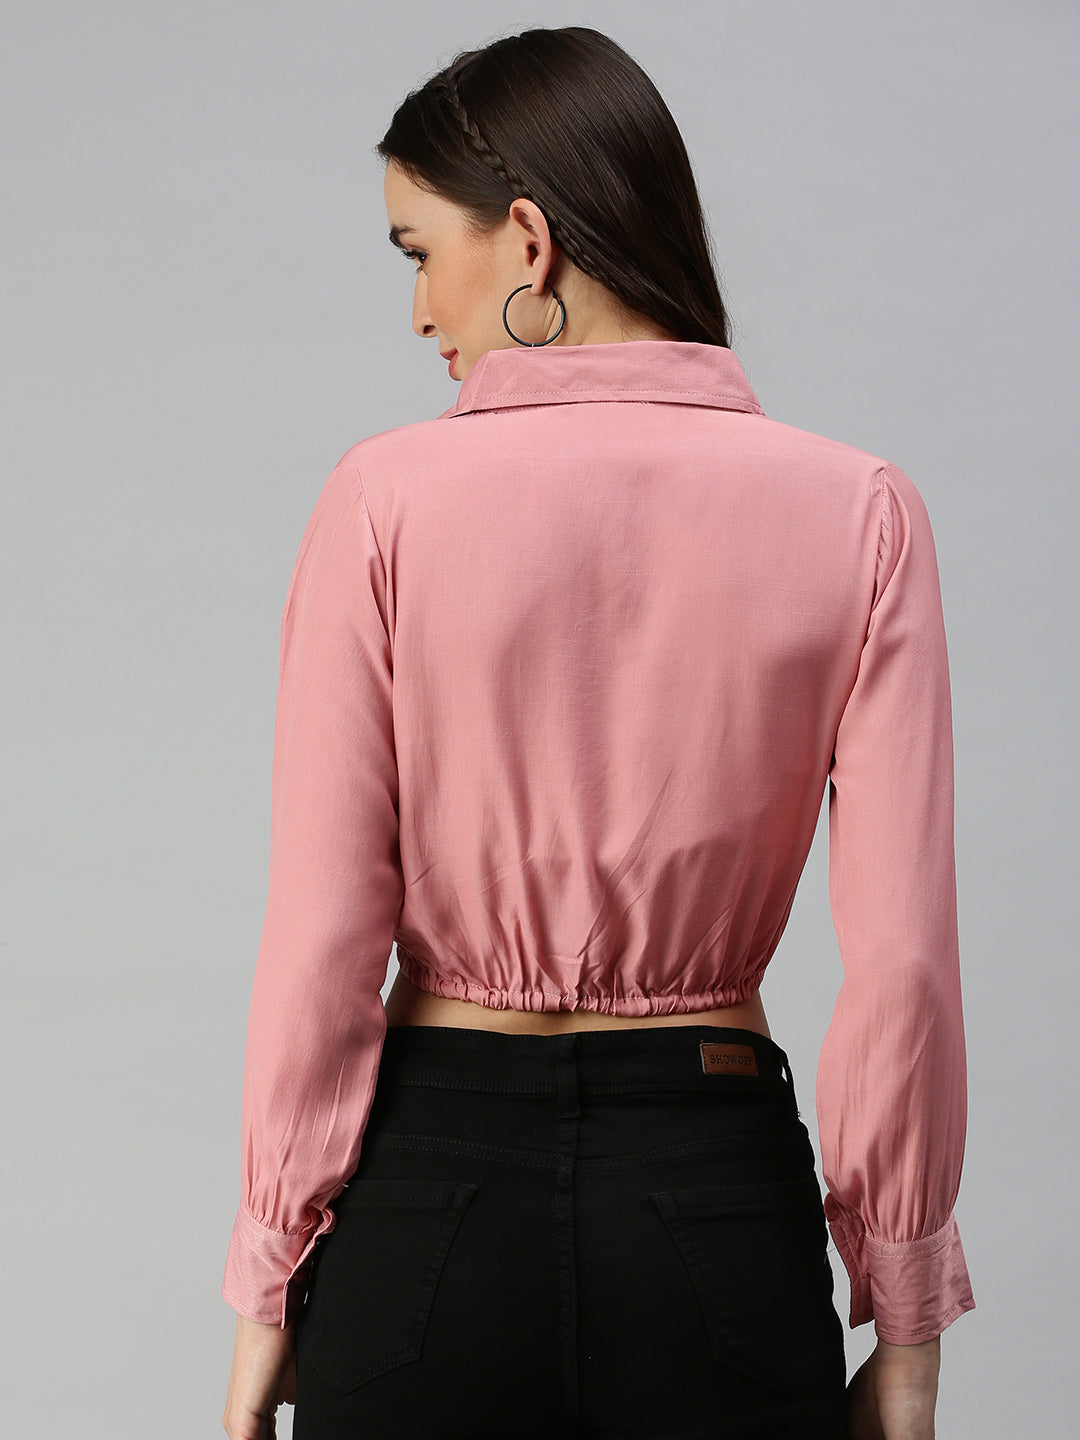 Women's Pink Solid Crop Tops